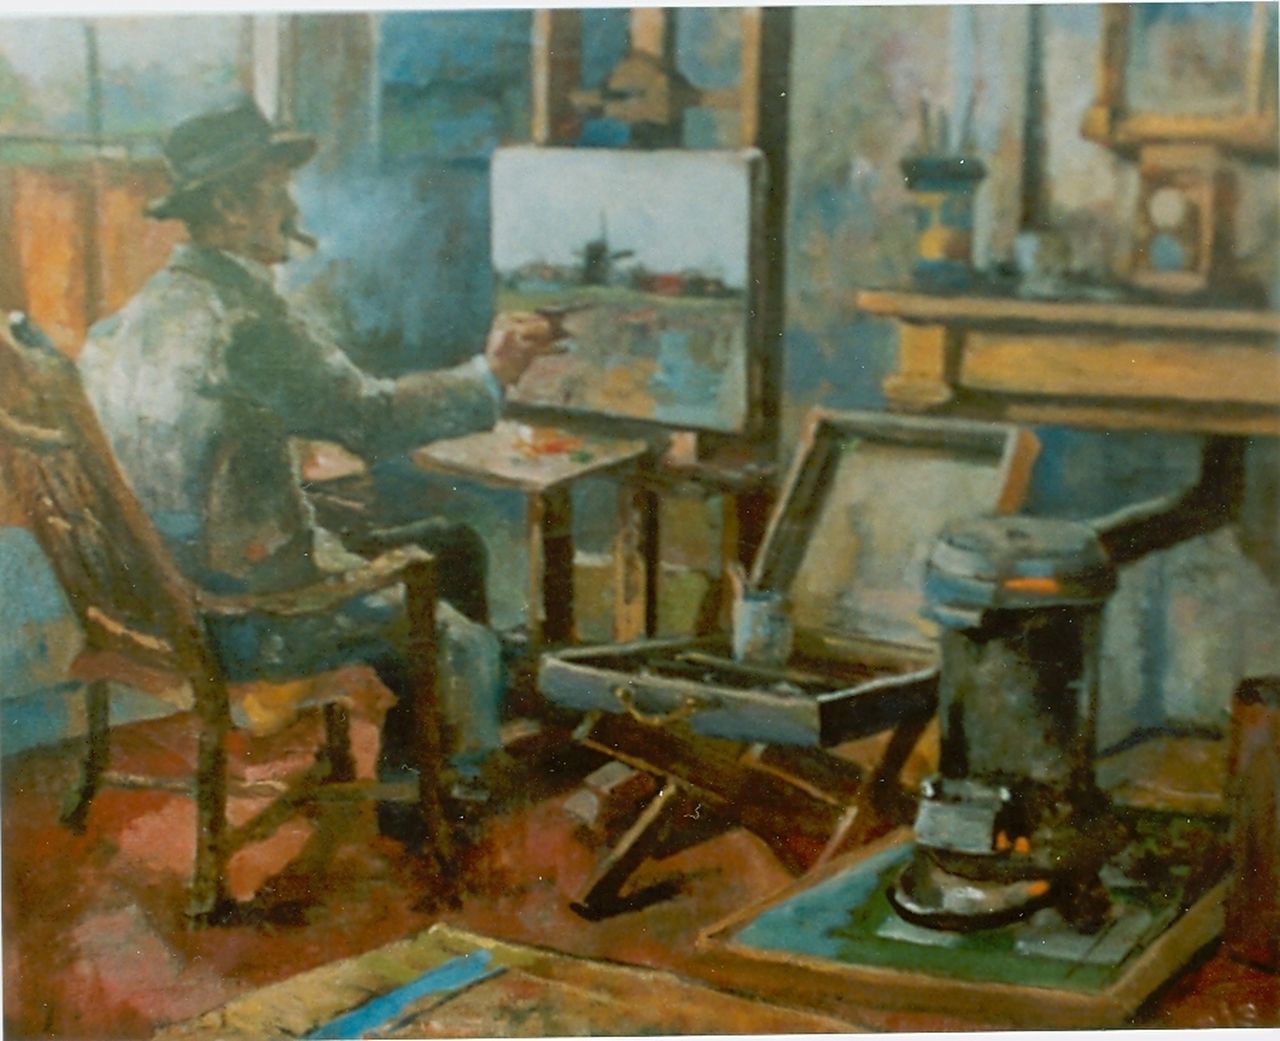 Rivière A.P. de la | Adrianus Philippus 'Adriaan' de la Rivière, De schilder in zijn atelier, olieverf op doek 44,7 x 55,0 cm, gesigneerd linksonder